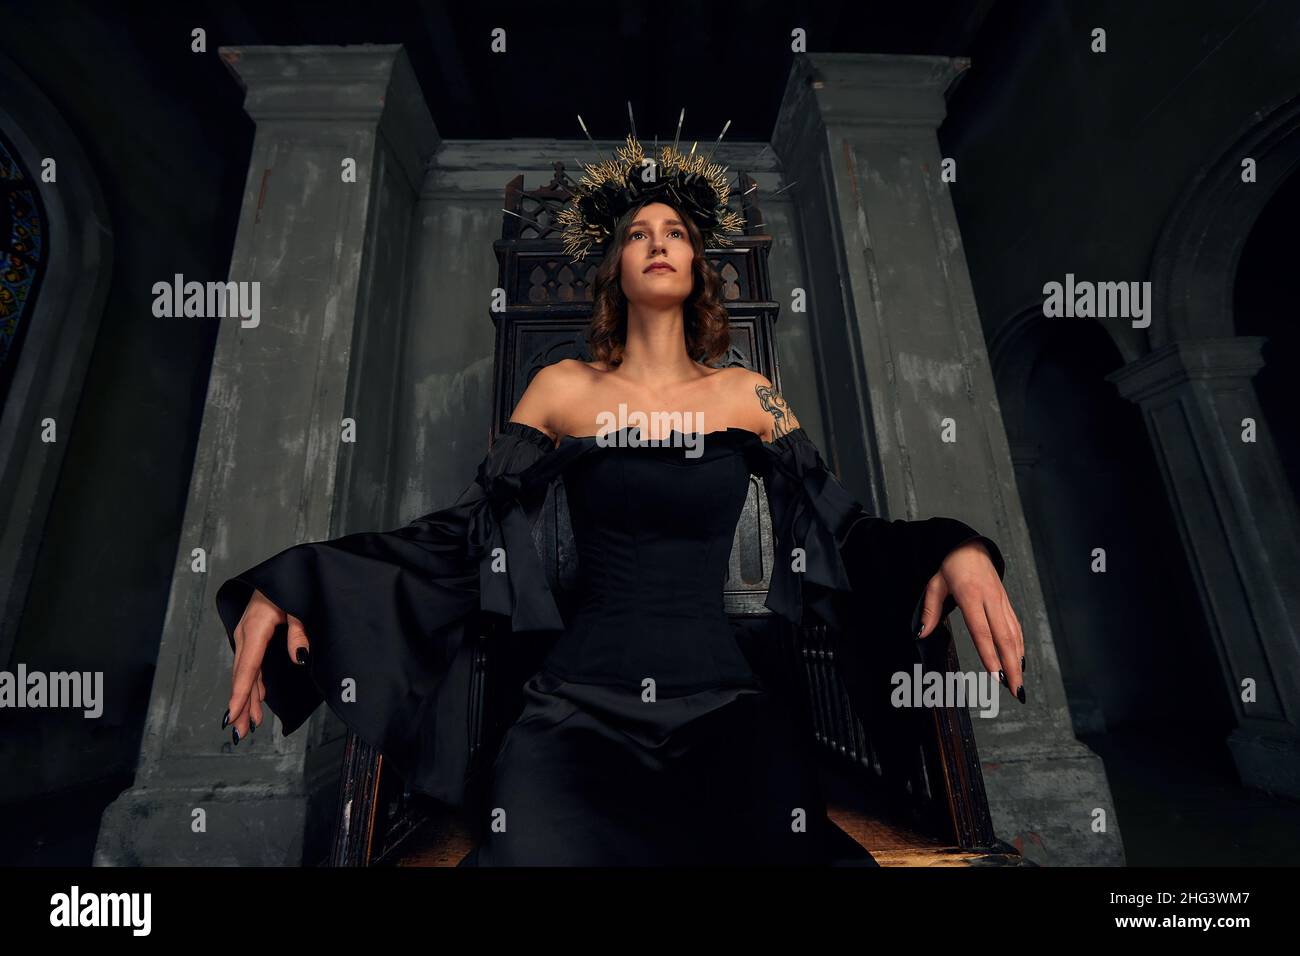 Portrait d'une belle jeune femme médiévale en robe noire dans une couronne élégante assise sur un trône.L'histoire du Moyen-âge. Banque D'Images